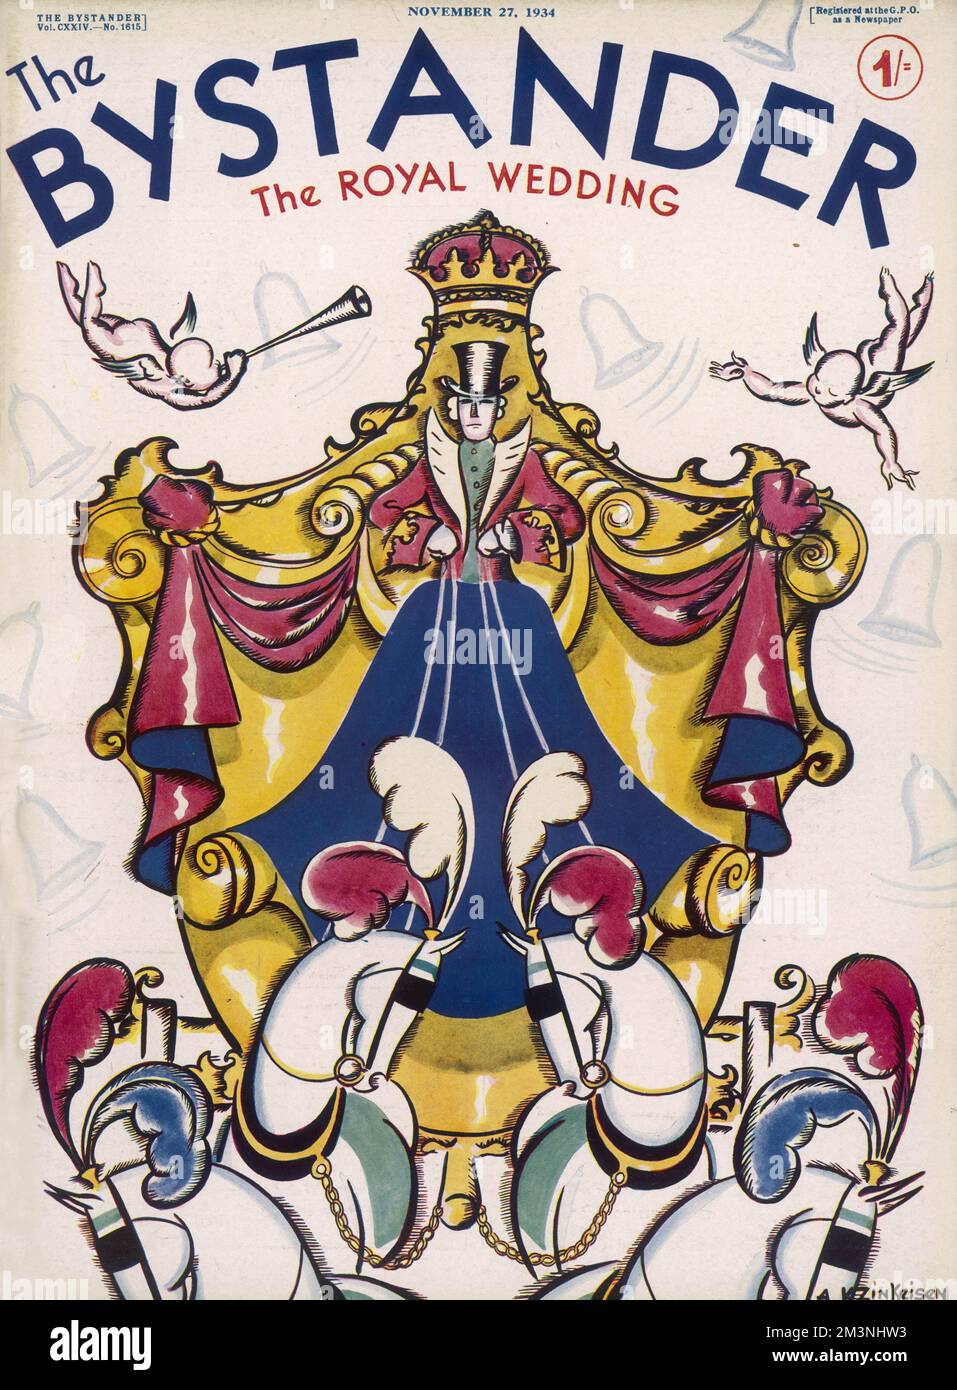 Copertina di un numero speciale del Bystander nel 1934, che commemora il matrimonio tra il principe Giorgio, duca di Kent e la principessa Marina di Grecia. L'illustrazione di Anna Zinkeisen mostra una carrozza reale stilizzata trainata da quattro cavalli bianchi. Data: 1934 Foto Stock